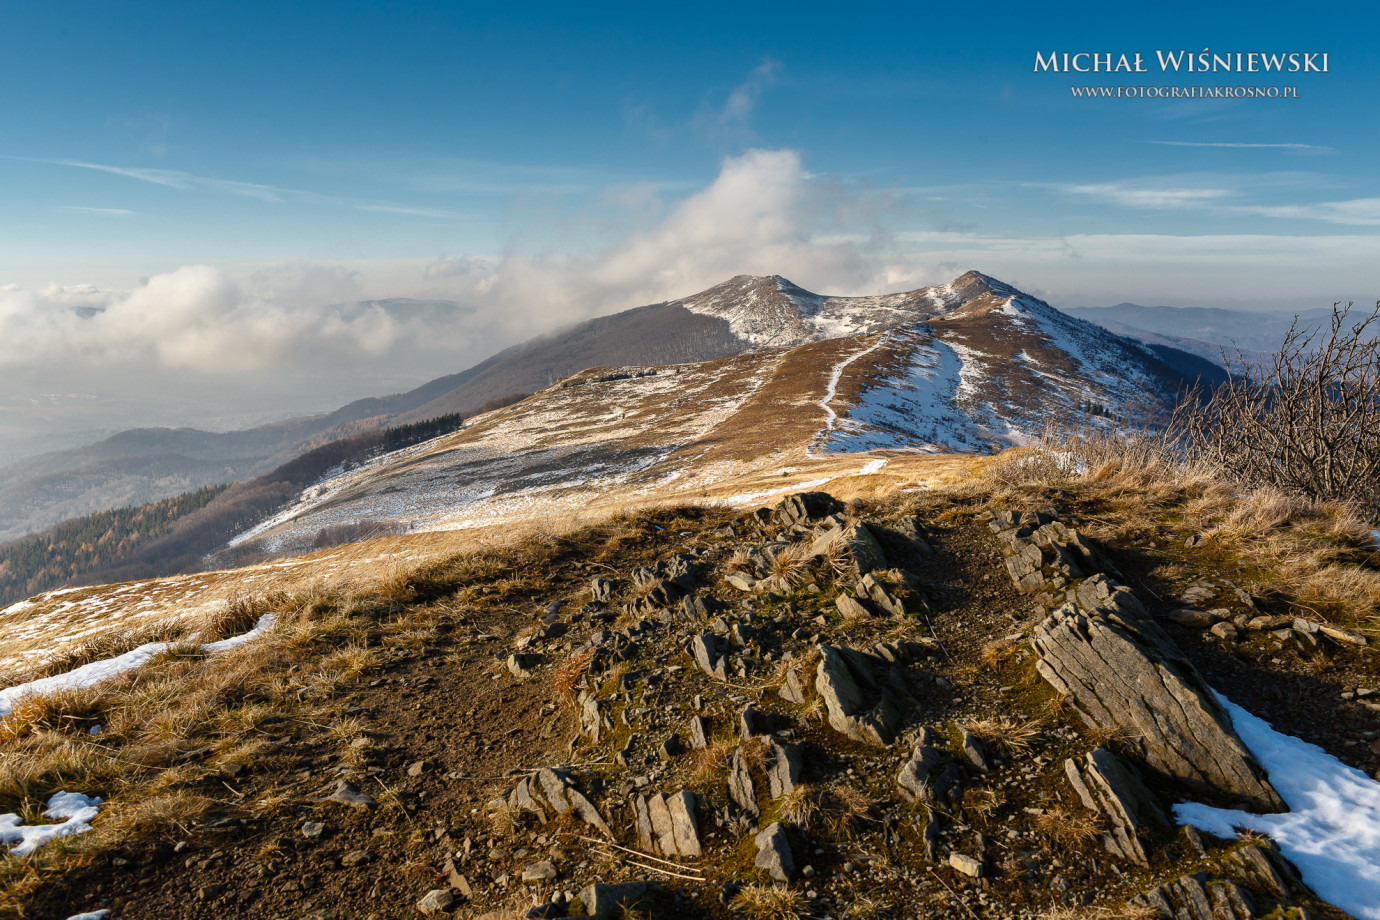 zdjęcia krosno fotograf michal-wisniewski portfolio zdjecia krajobrazu gory mazury